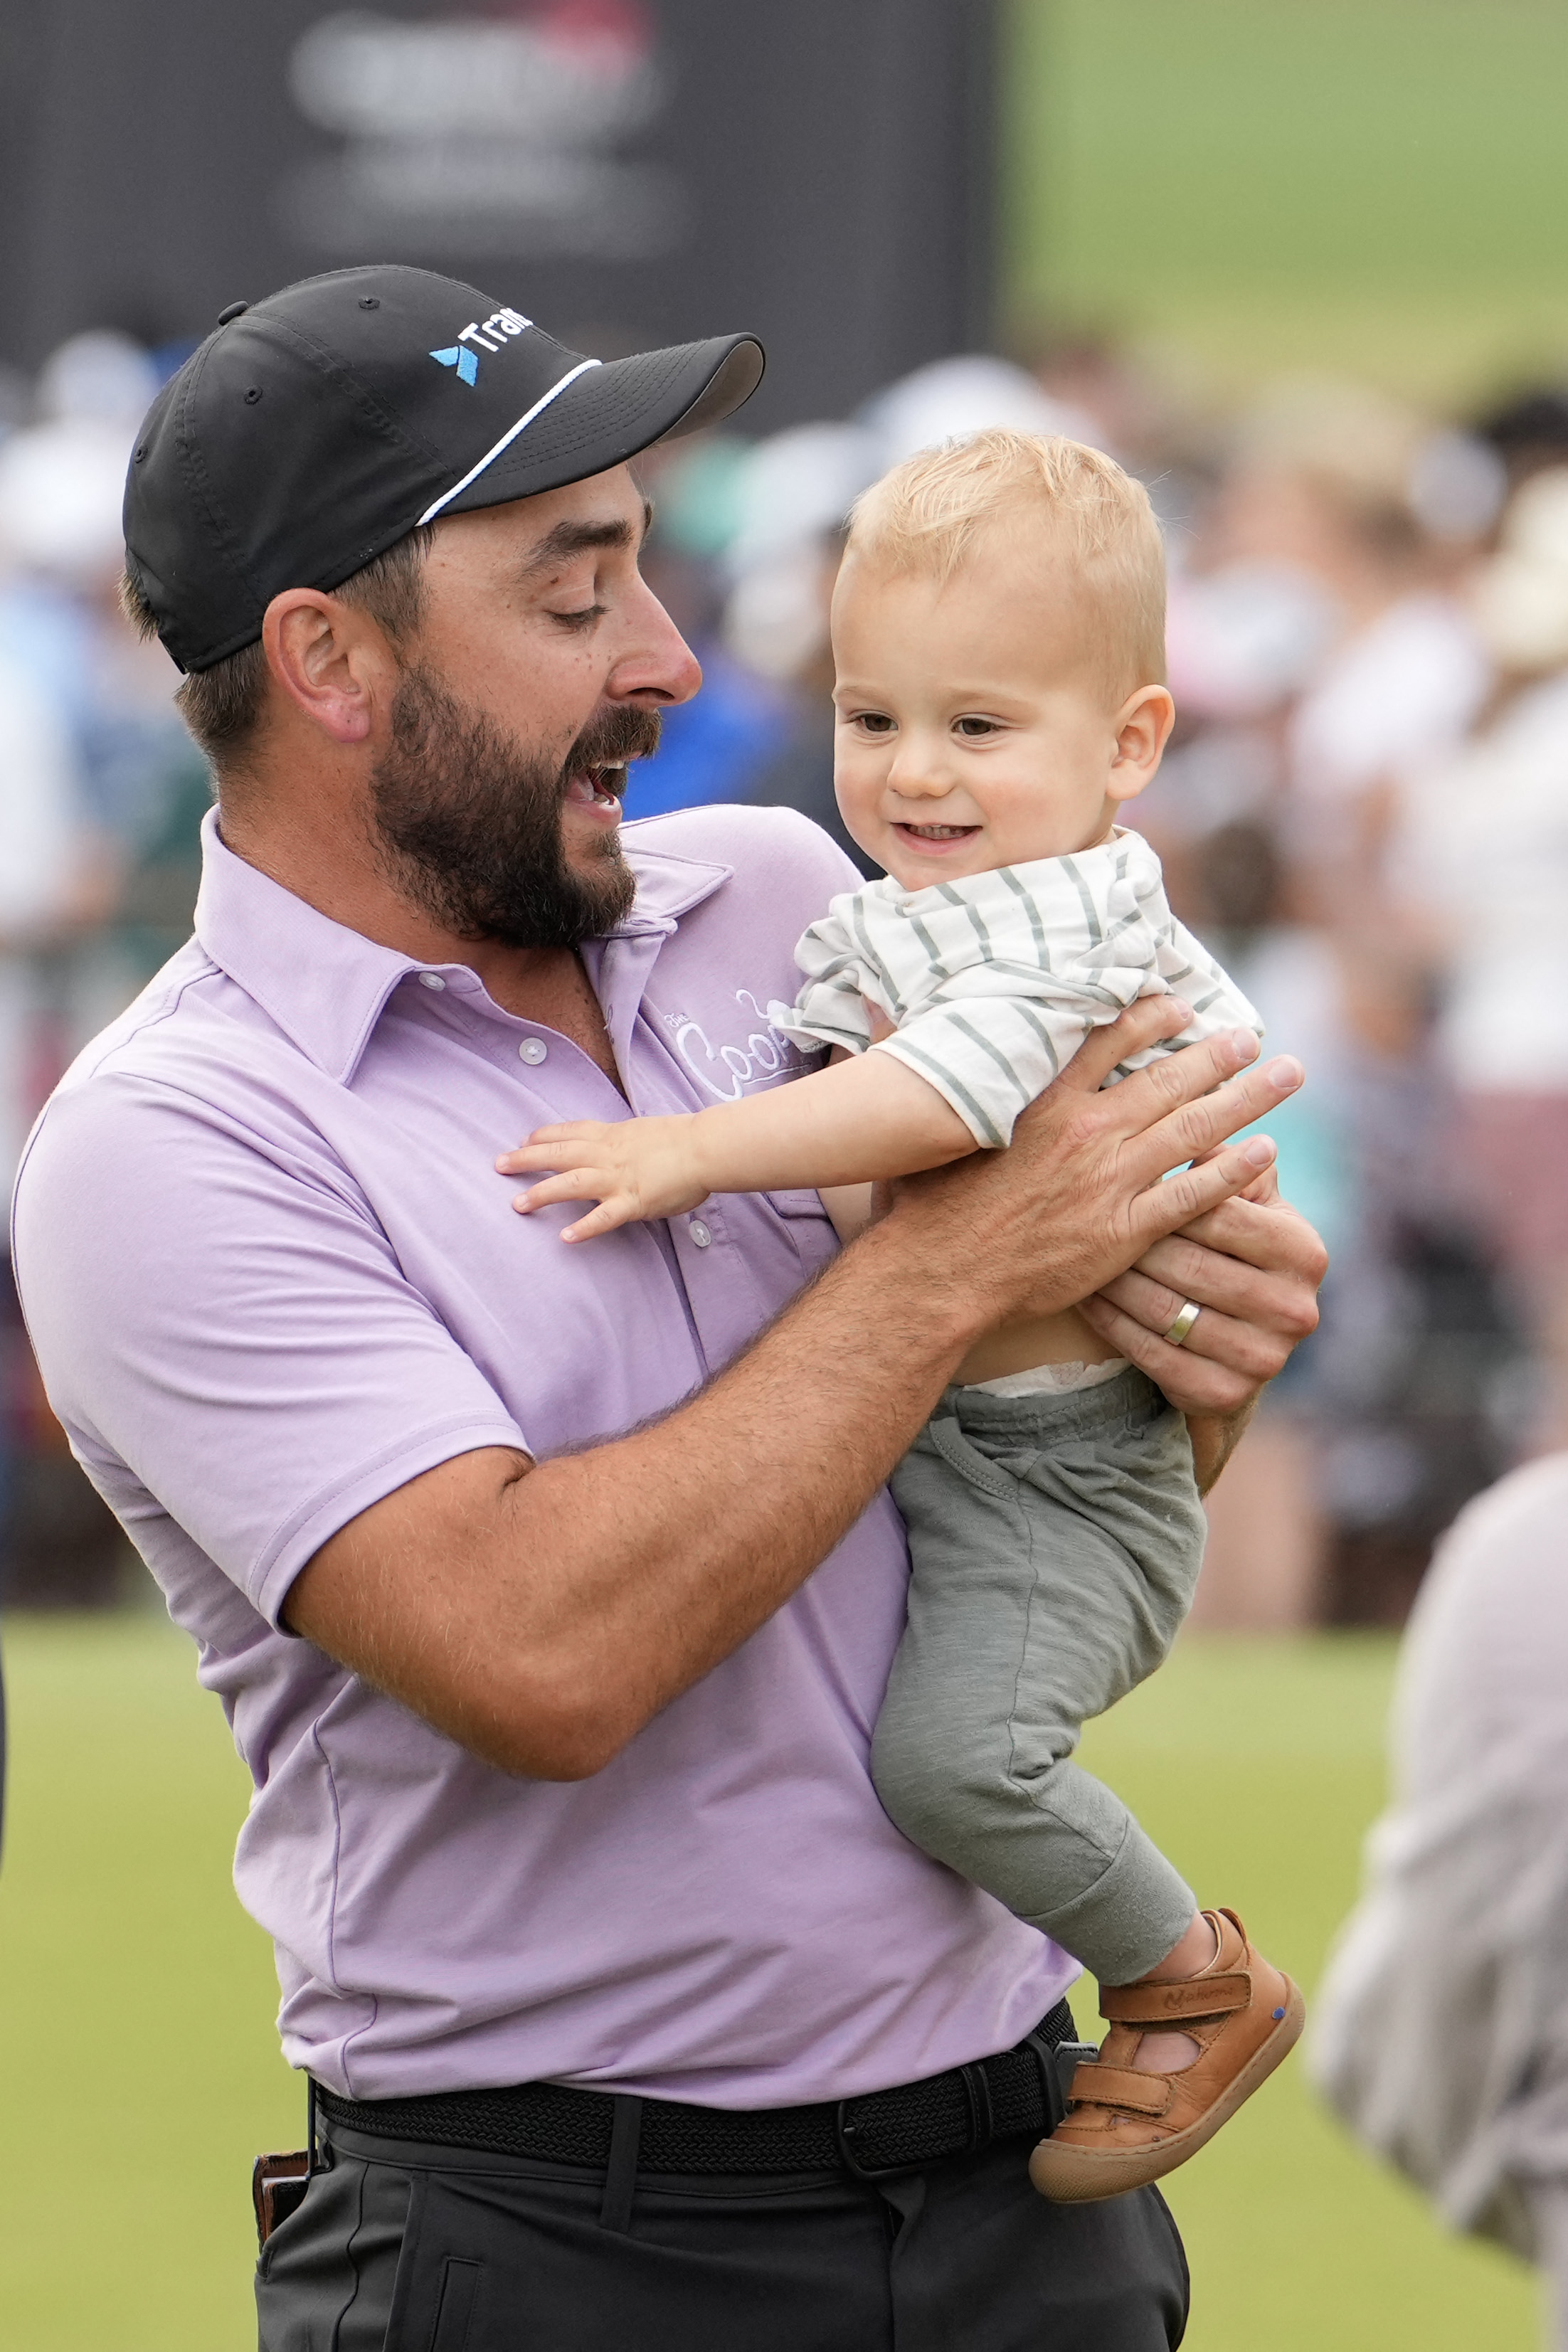 독일 슈테판 예거가 1일 막을 내린 휴스턴 오픈에서 우승하며 PGA 투어 첫 승을 올린 뒤 아기와 함께 기뻐하고 있다. AFP 연합뉴스